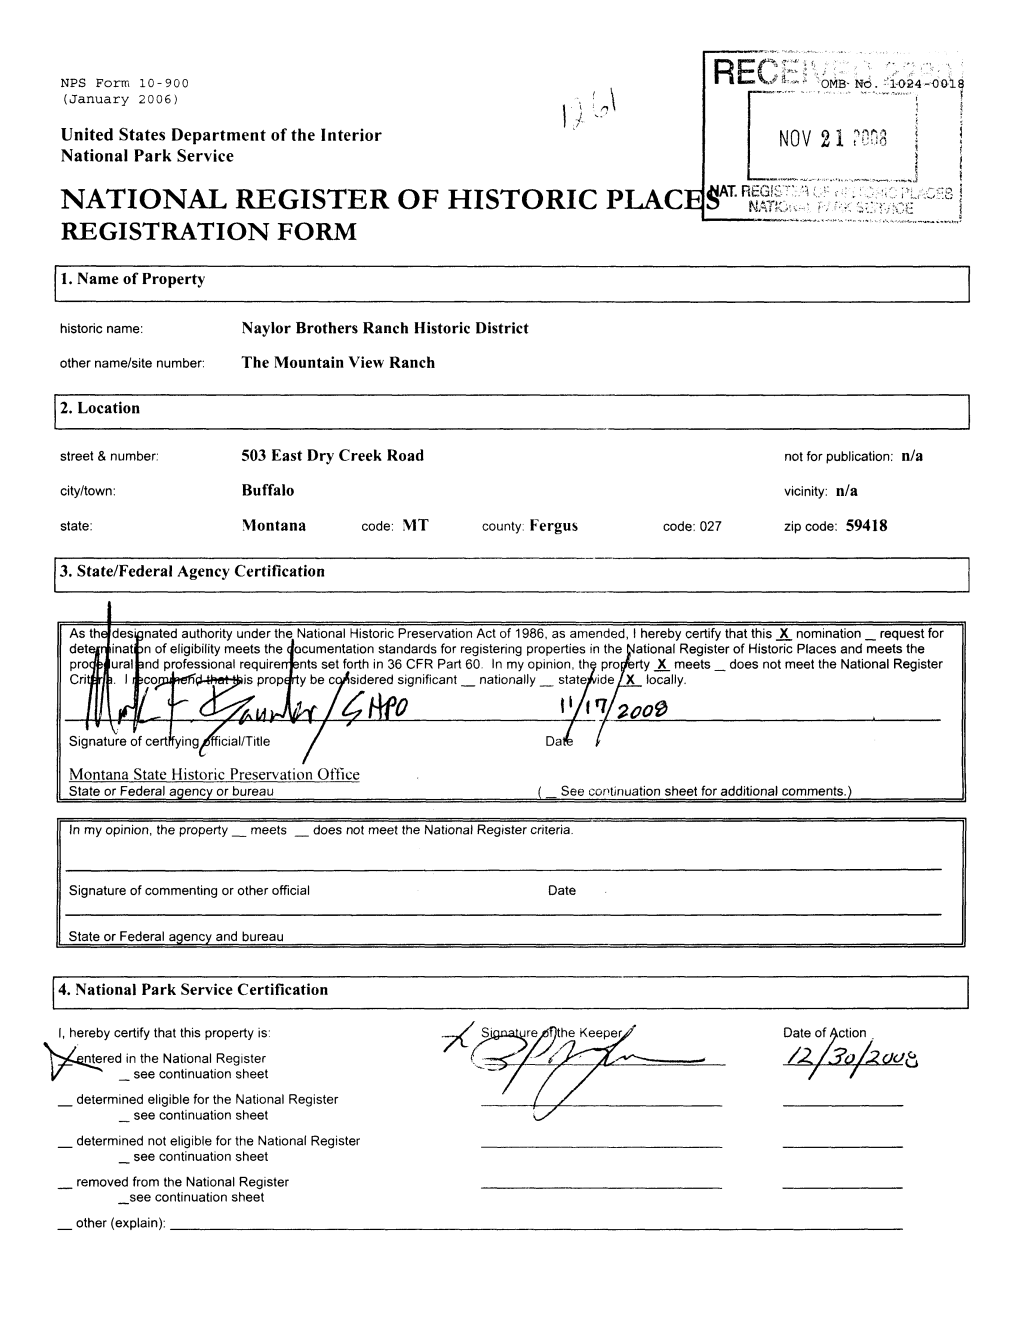 National Register of Historic Place S^ 11 Registration Form